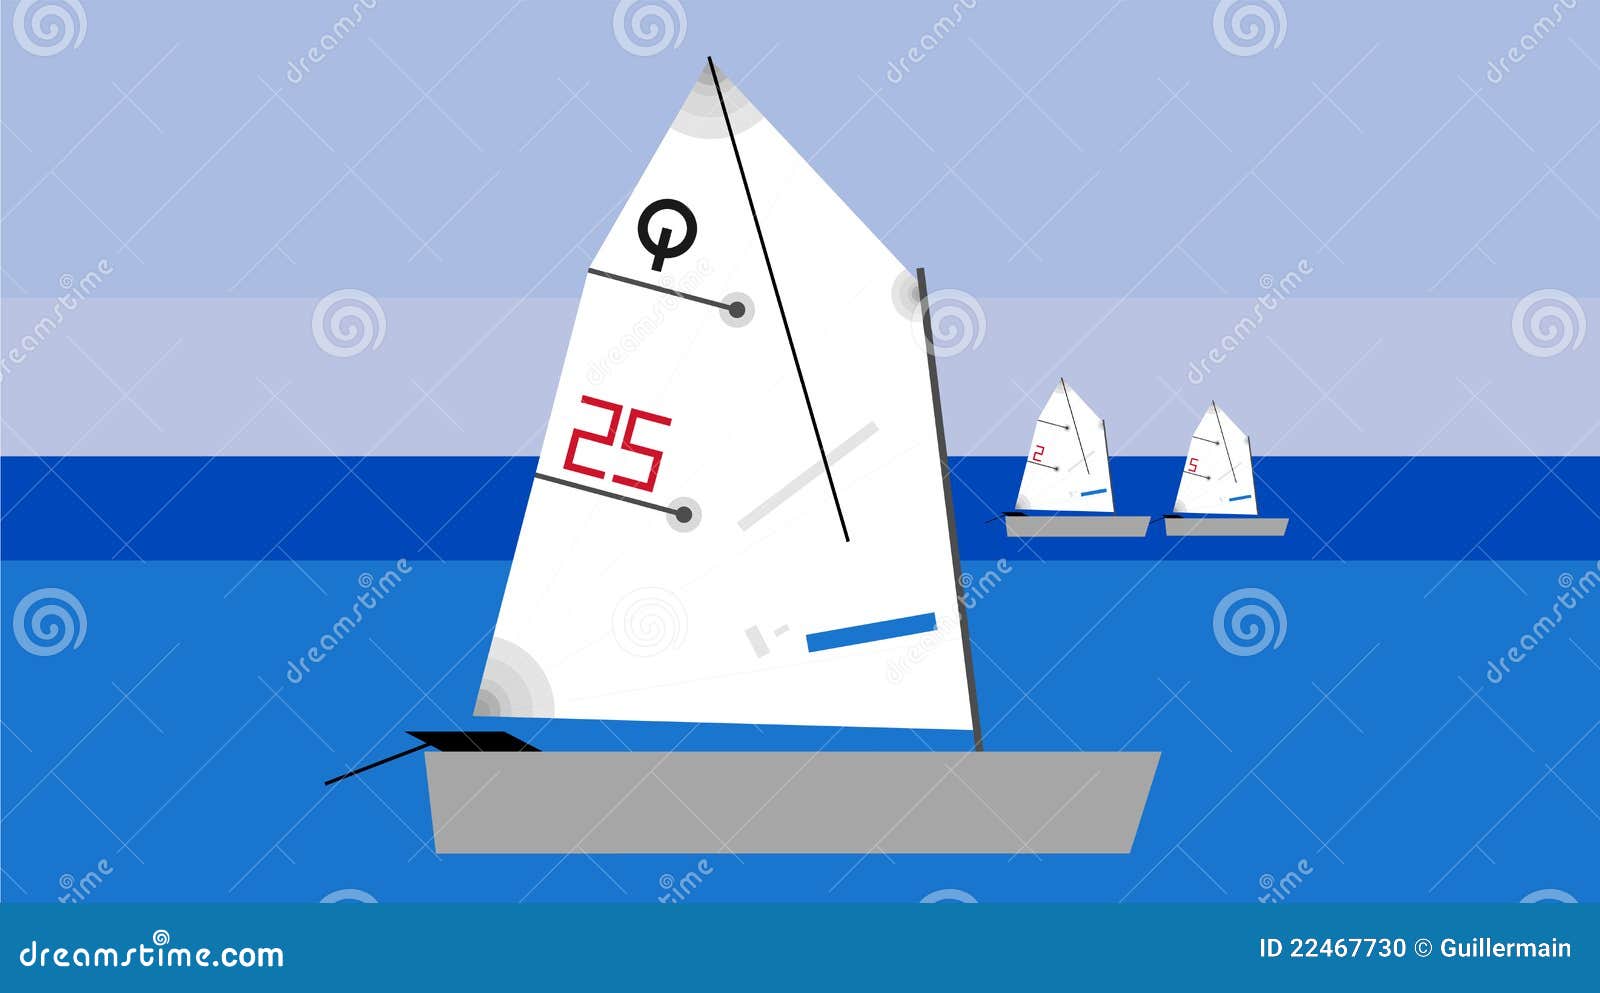 Optimist Sailboat Stock Illustrations – 5 Optimist ...